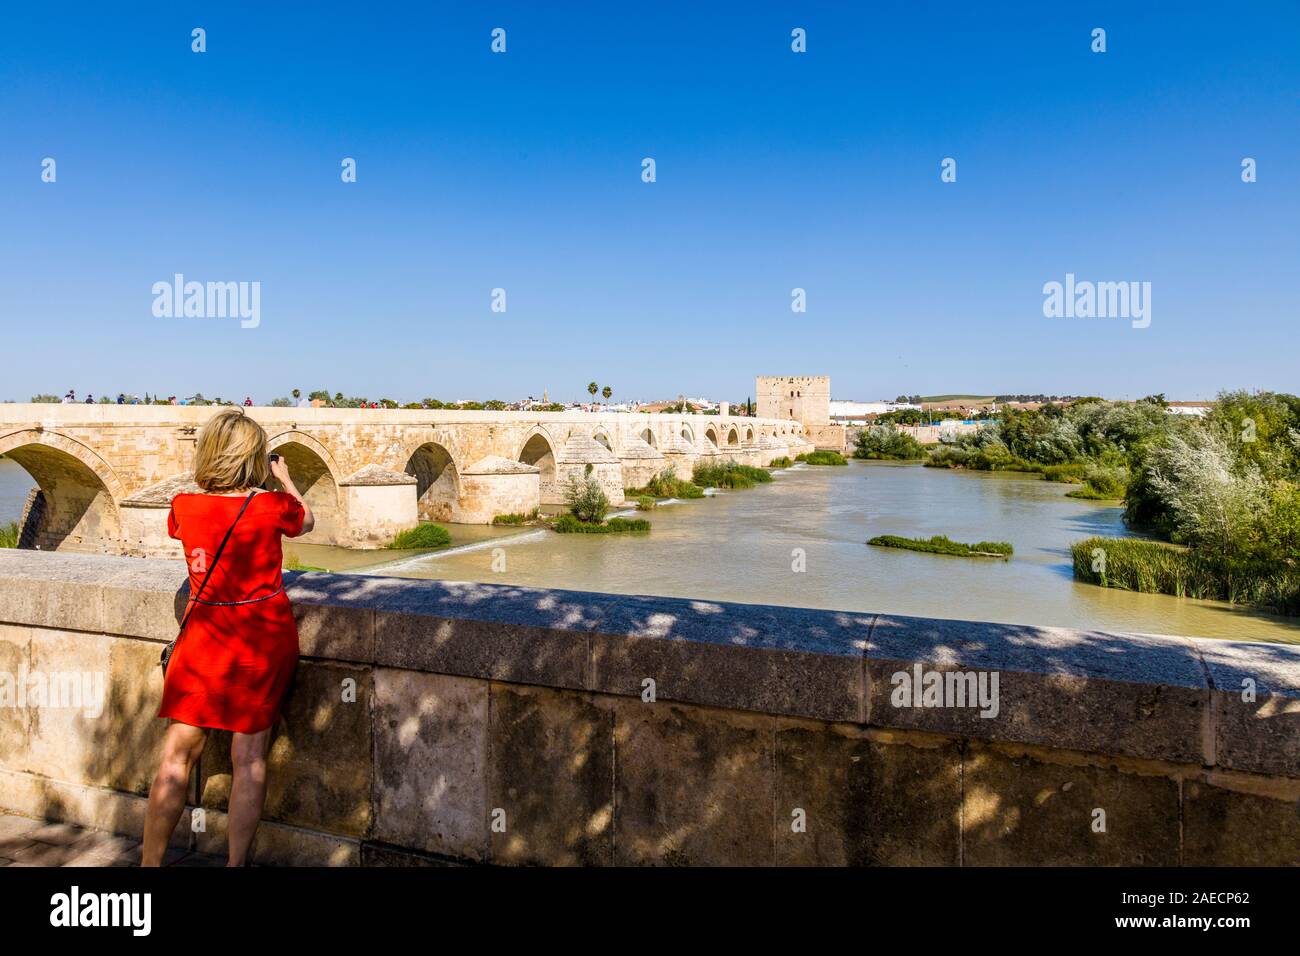 Le pont romain sur le Guadalquivir, Cordoue en Andalousie dans la région de l'Espagne Banque D'Images